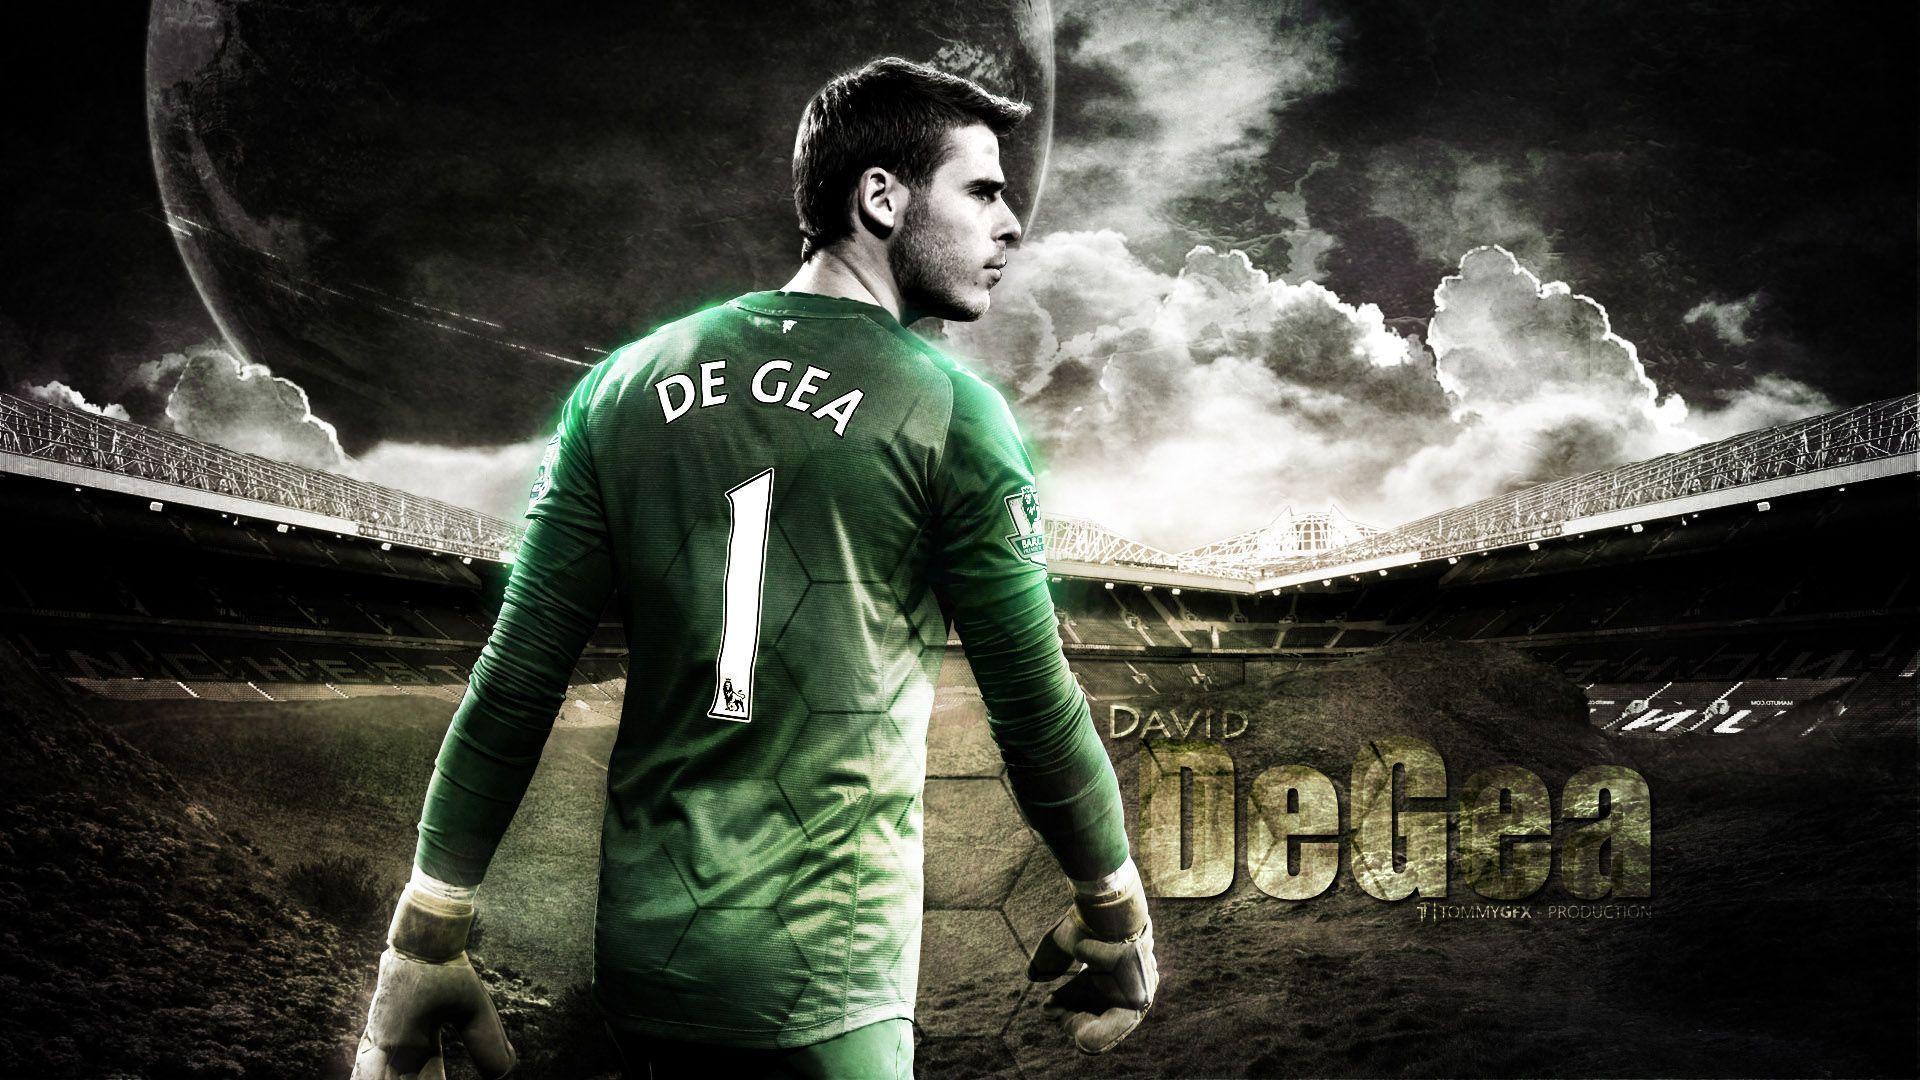 David De Gea 2014 Man Utd Wallpaper Wide or HD